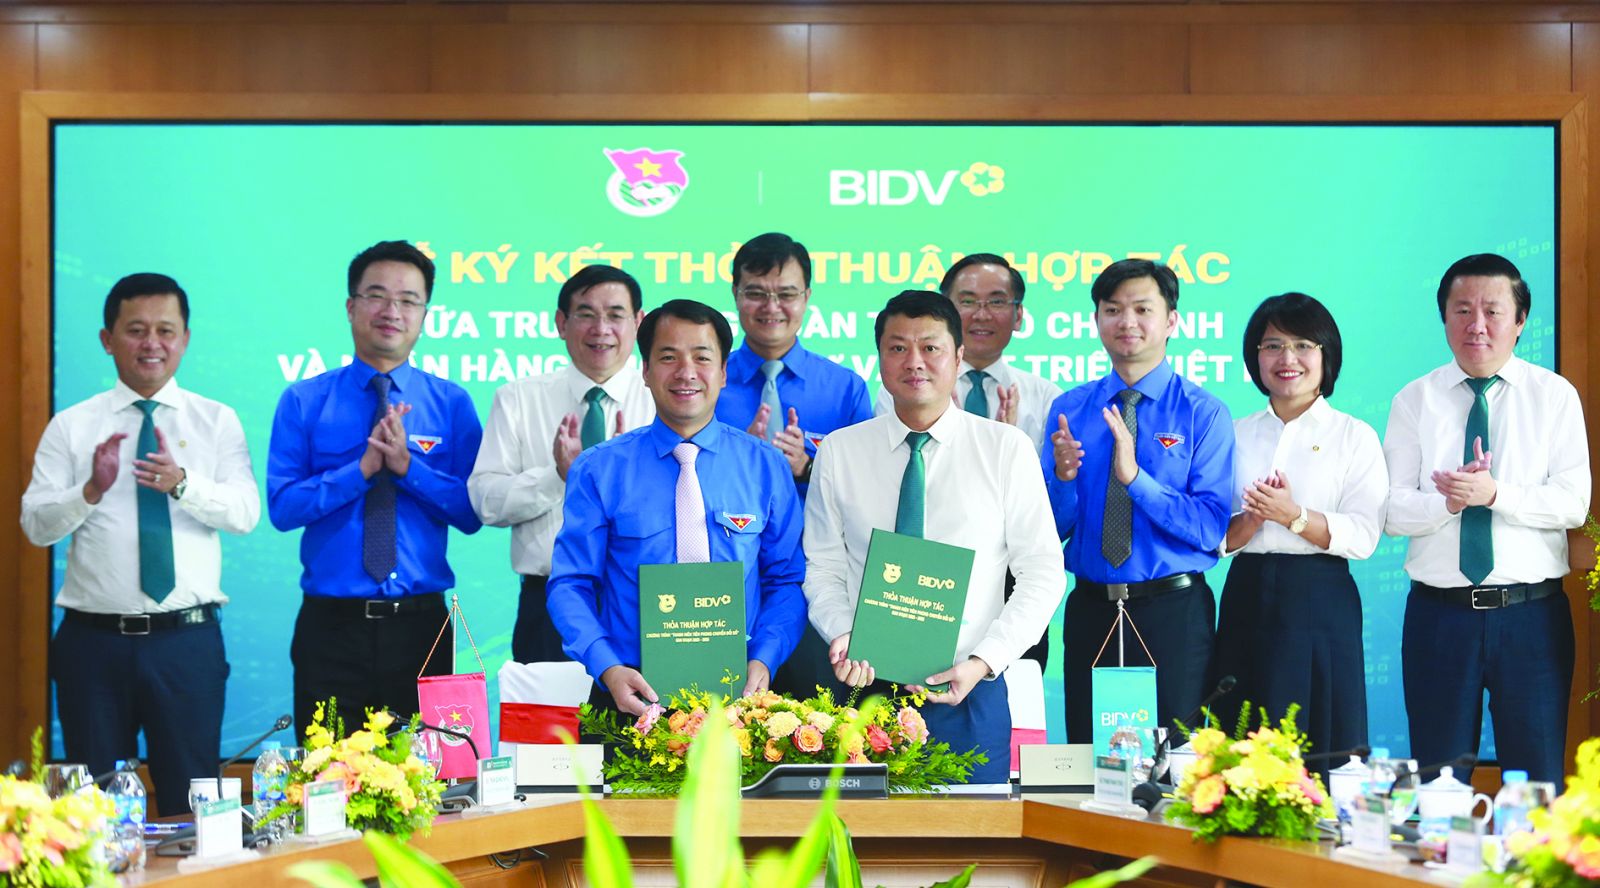  Đại diện Lãnh đạo Trung ương Đoàn và BIDV ký kết thỏa thuận hợp tác giai đoạn 2023-2025